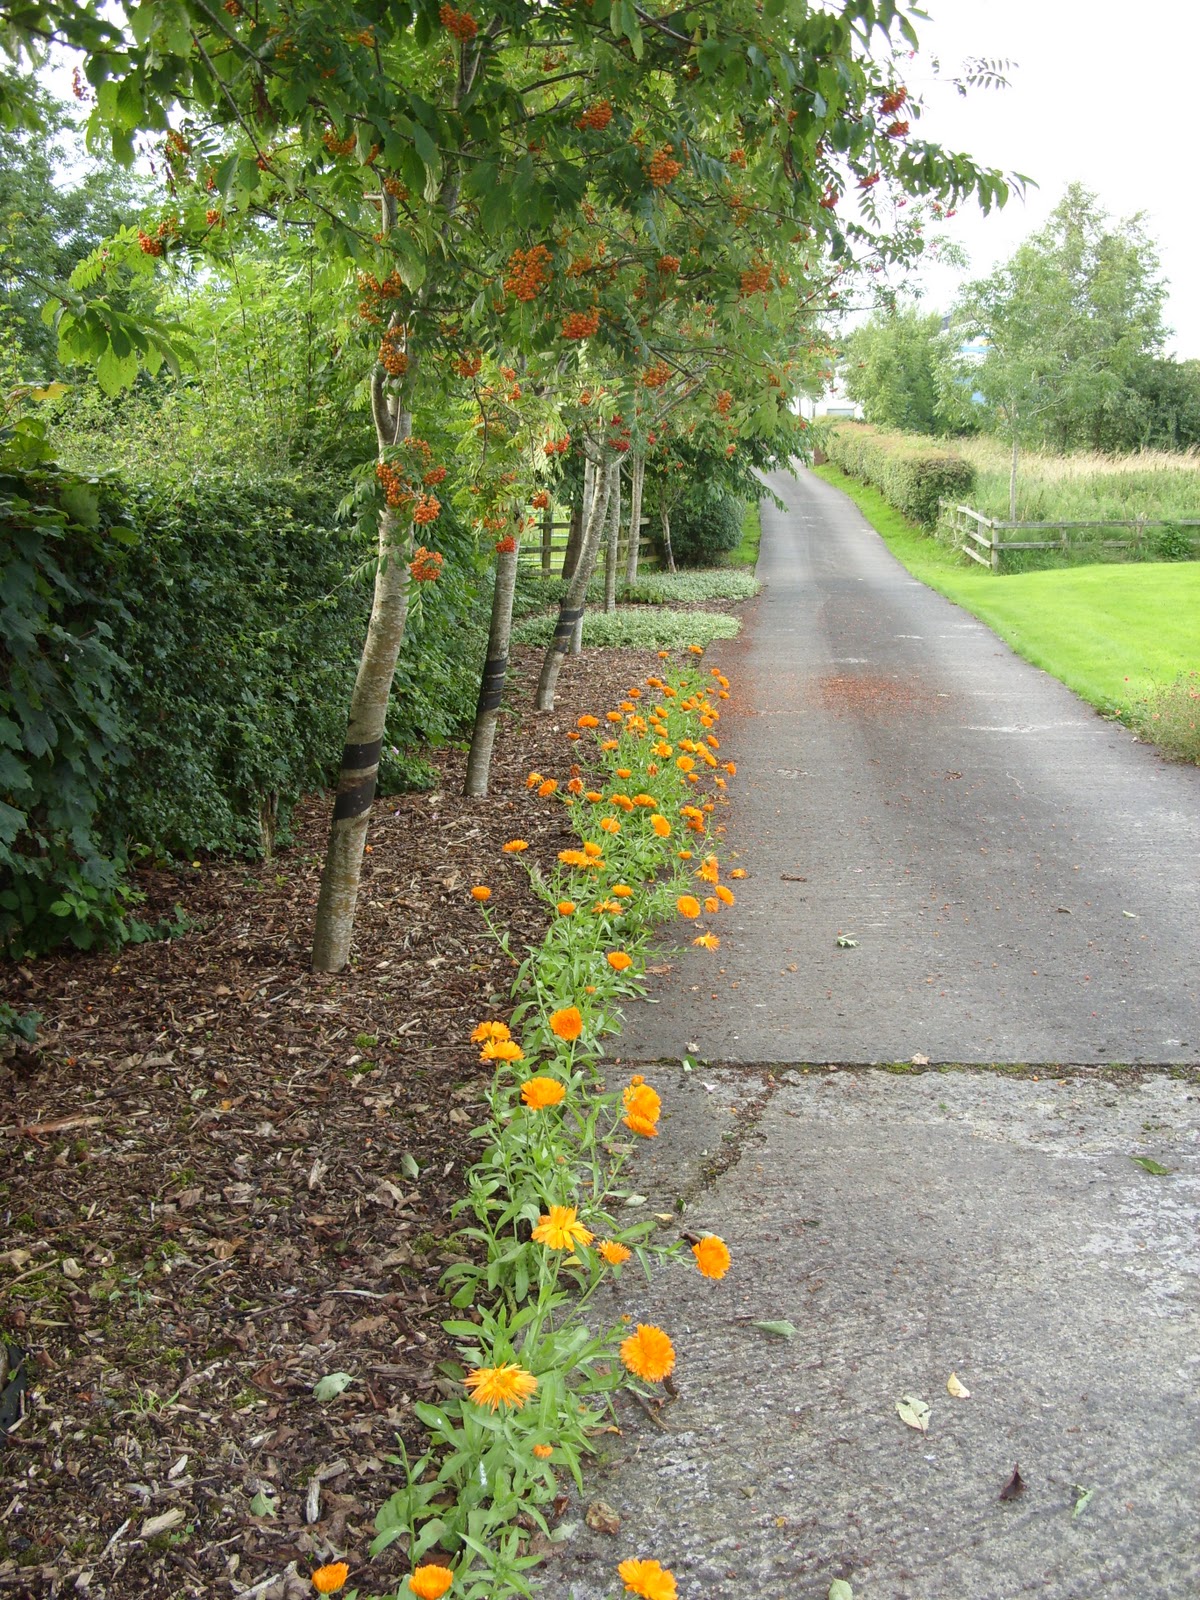 Kelli's Northern Ireland Garden: My Garden